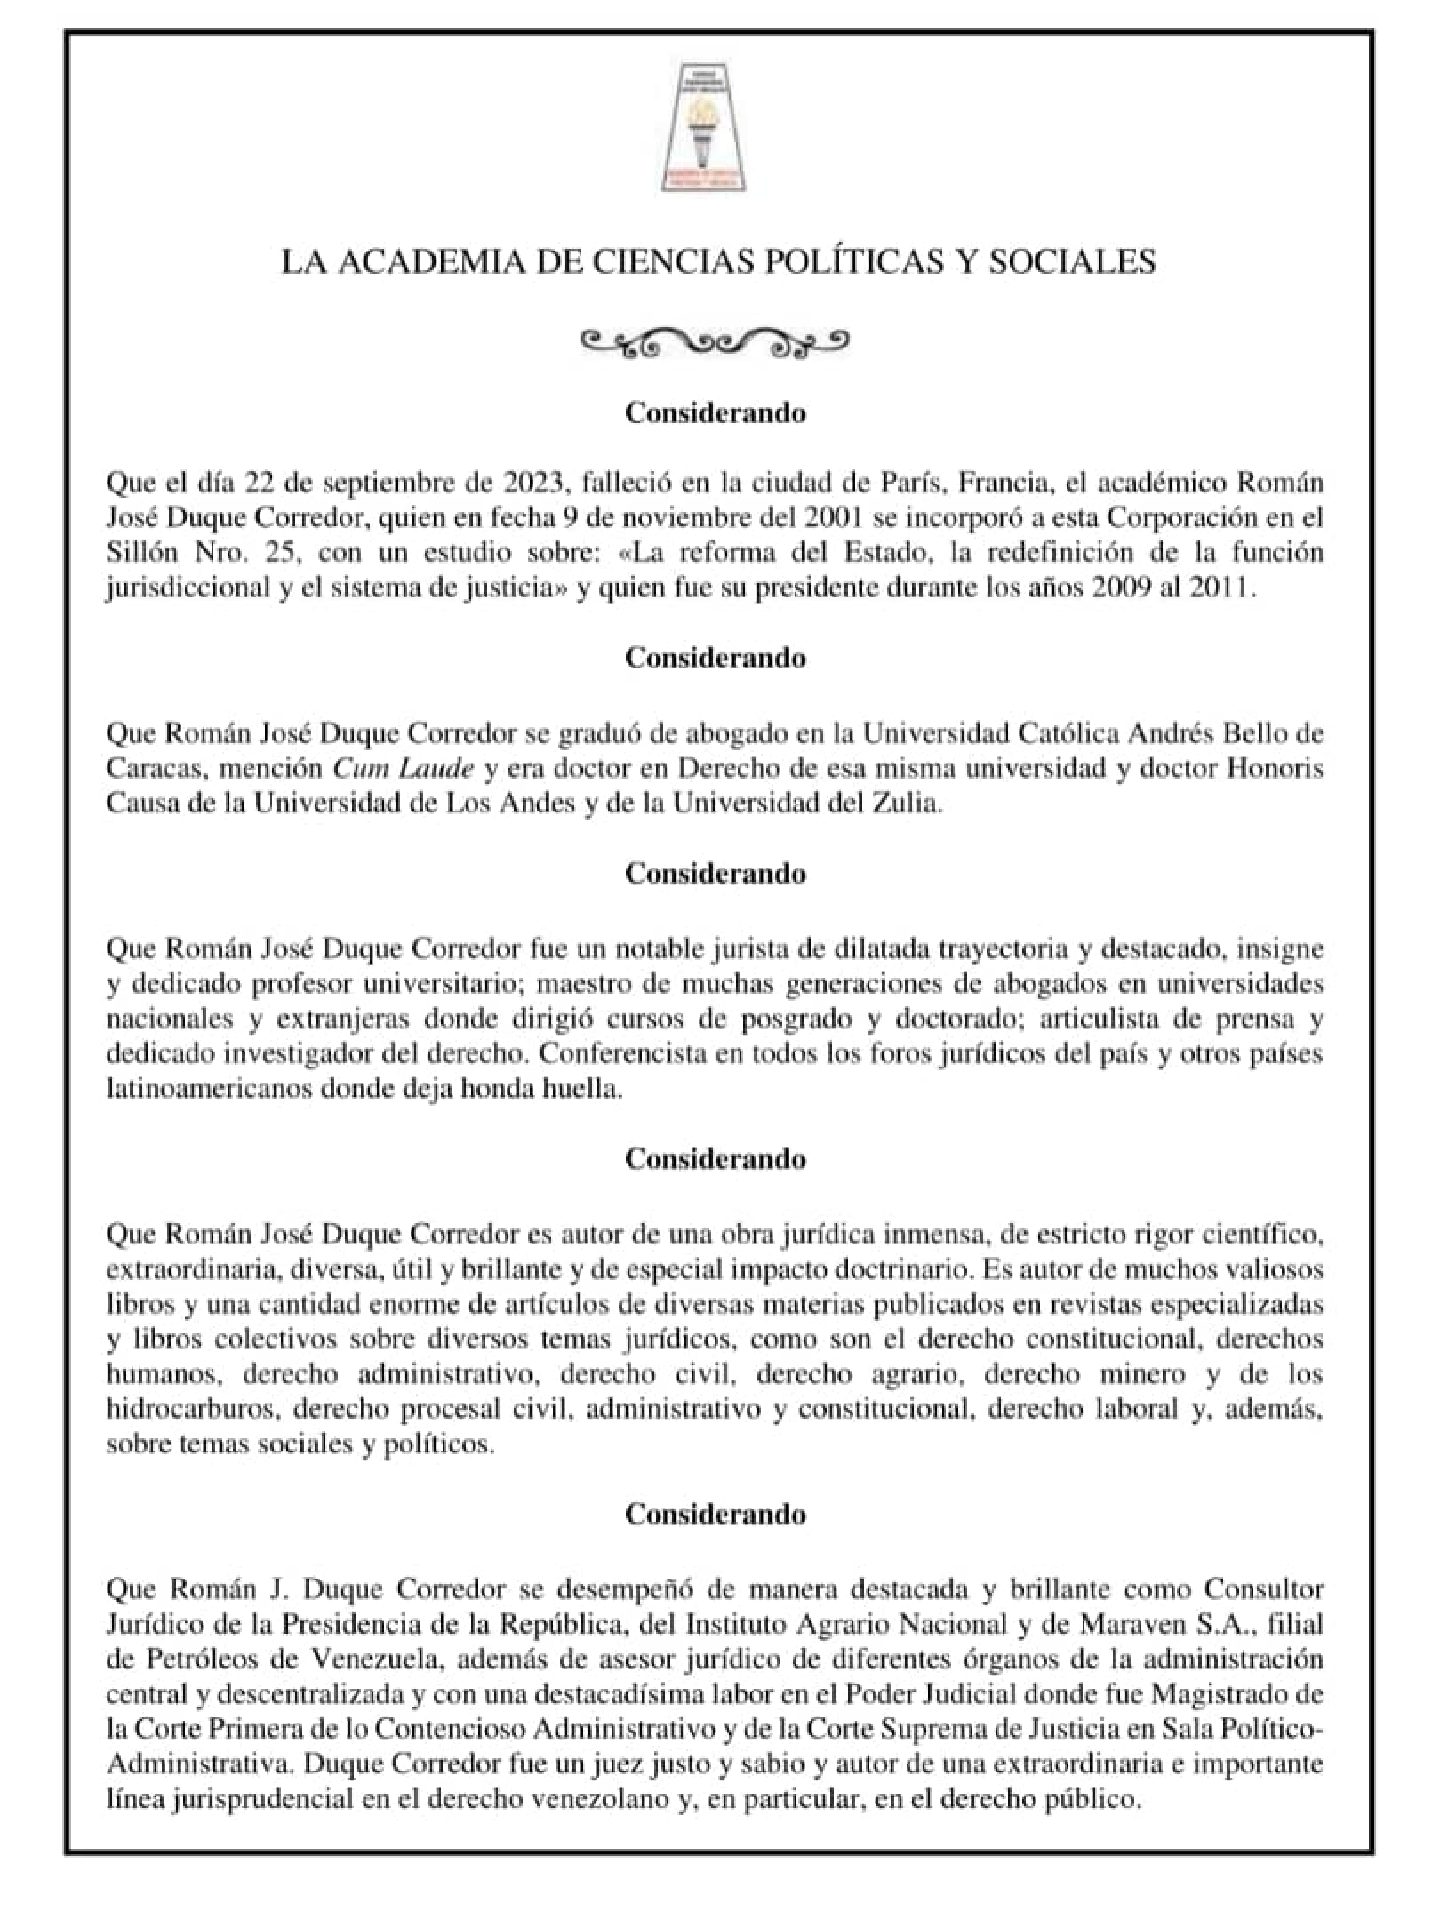 Acuerdo de duelo de la Academia de Ciencias Políticas y Sociales por el lamentable fallecimiento del académico Dr. ROMÁN JOSÉ DUQUE CORREDOR